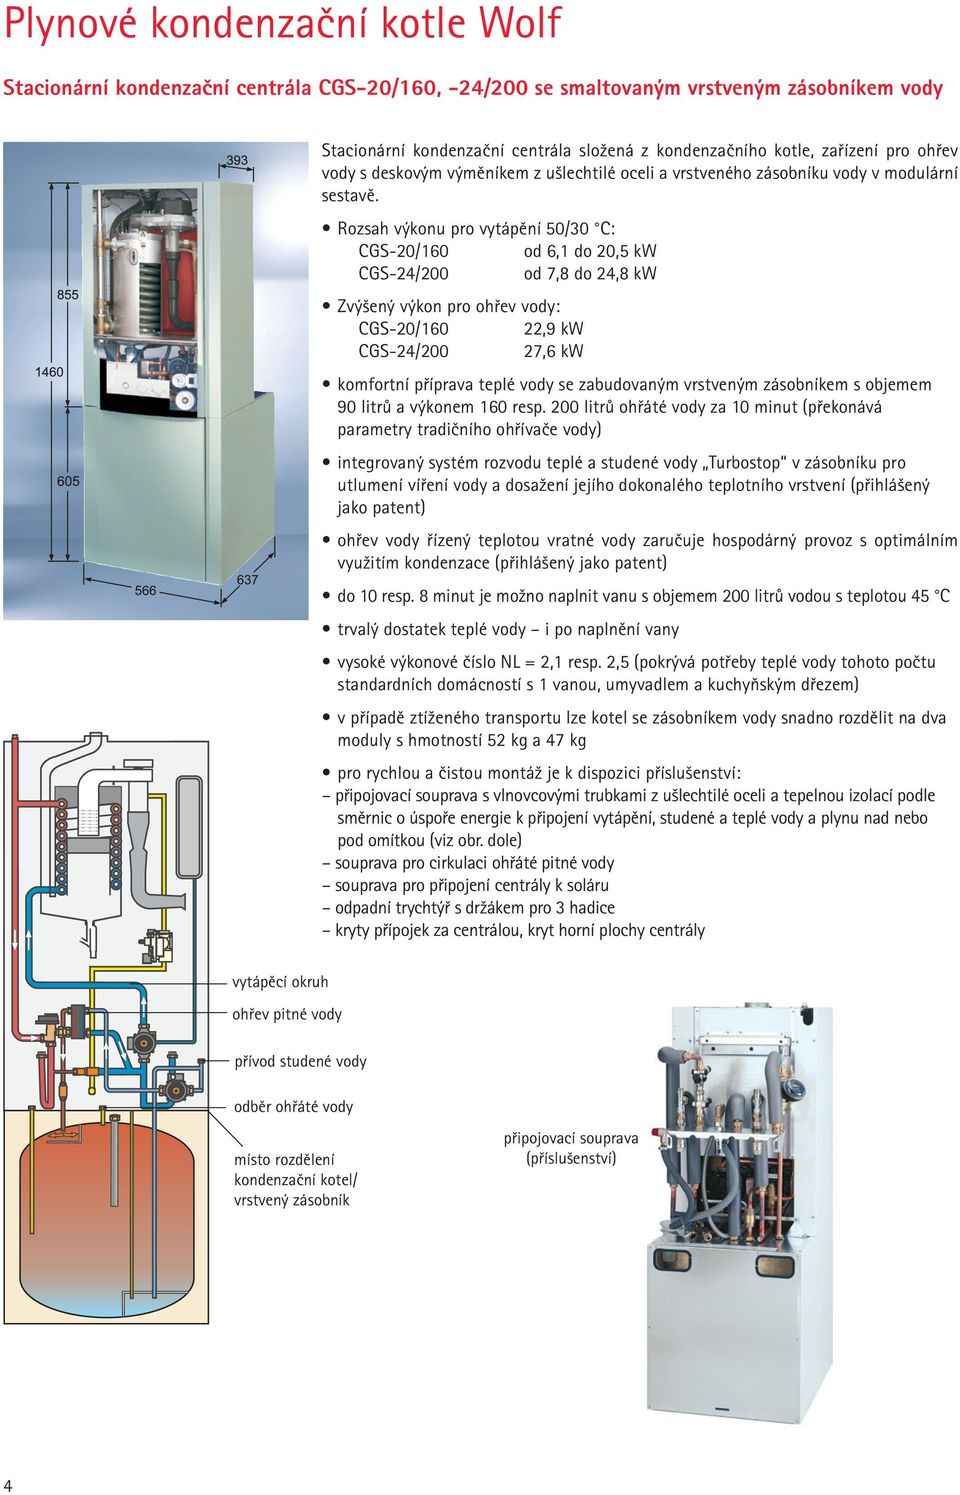 Rozsah výkonu pro vytápění 50/30 C: CGS-20/160 od 6,1 do 20,5 kw CGS-24/200 od 7,8 do 24,8 kw Zvýšený výkon pro ohřev vody: CGS-20/160 22,9 kw CGS-24/200 27,6 kw komfortní příprava teplé vody se